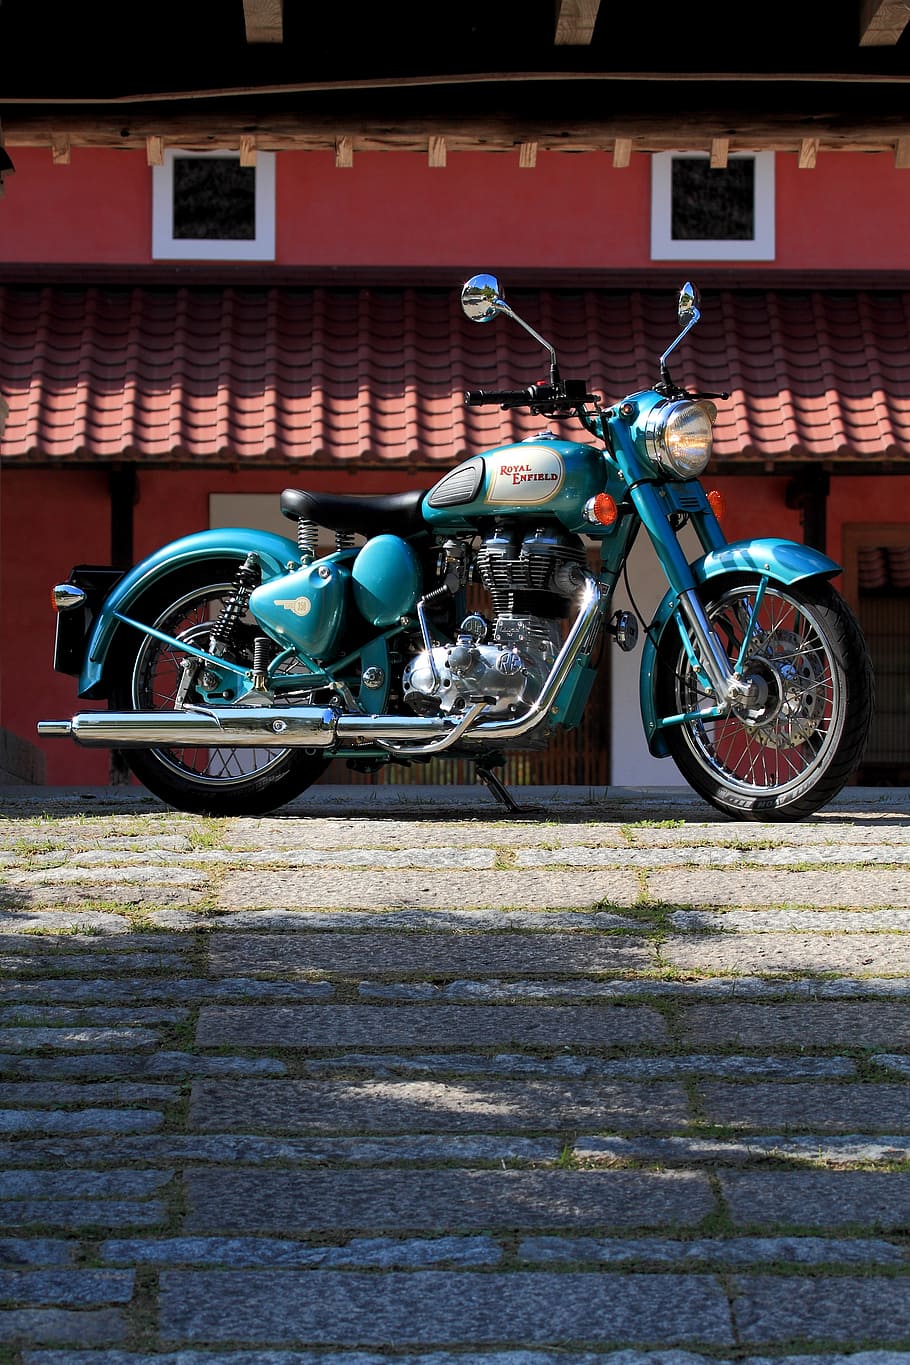 estacionado, azul, negro, motocicleta de crucero, bicicleta, vehículo, retro, clásico, vintage, motocicleta